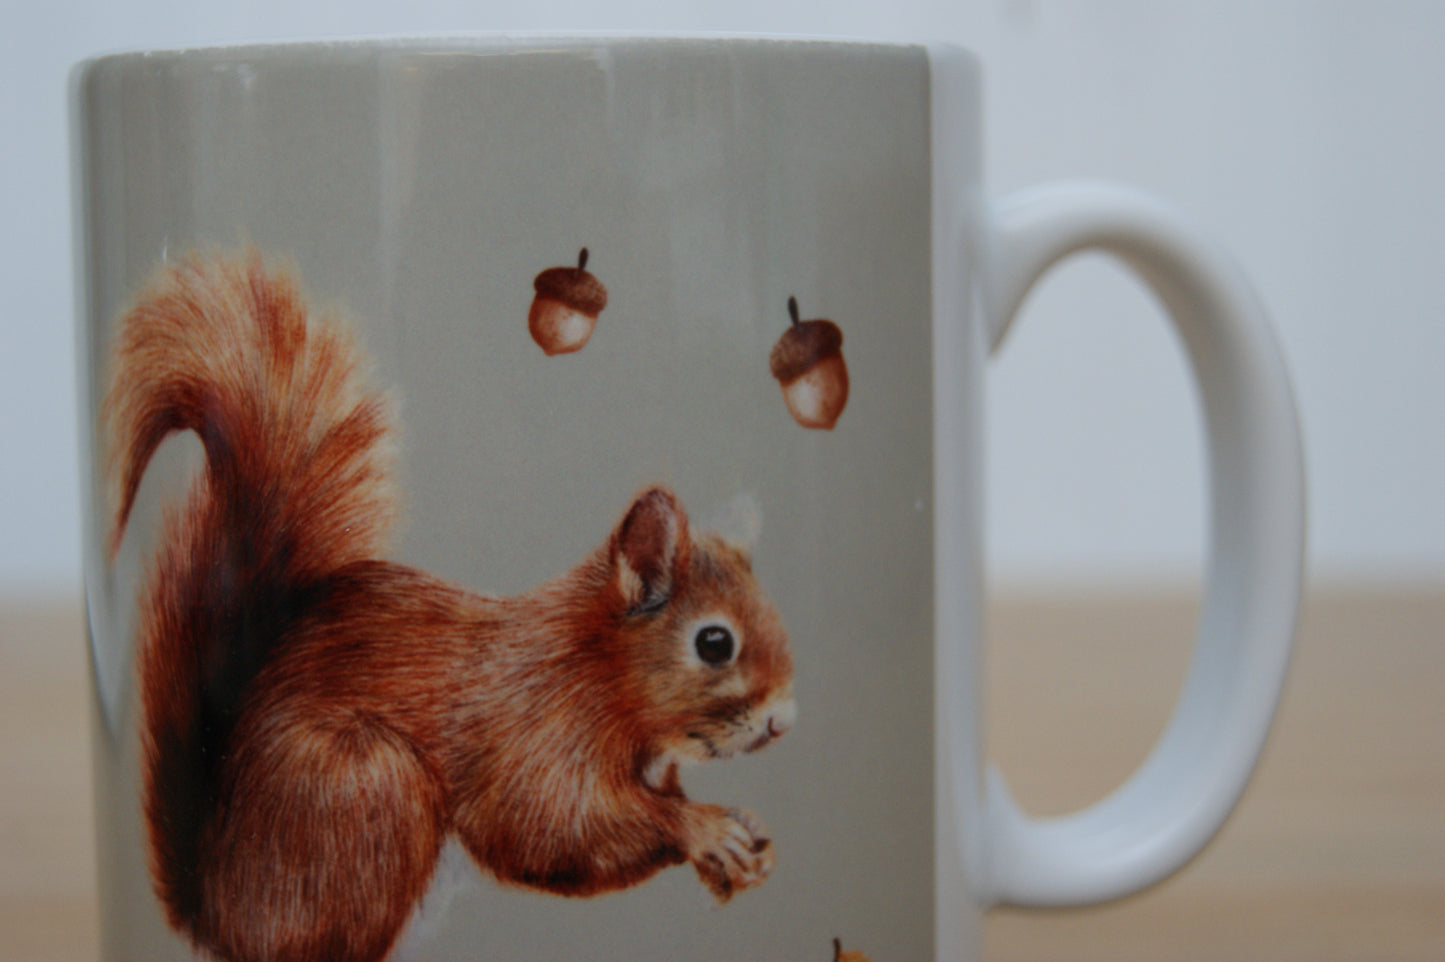 Squirrel Ceramic Mug